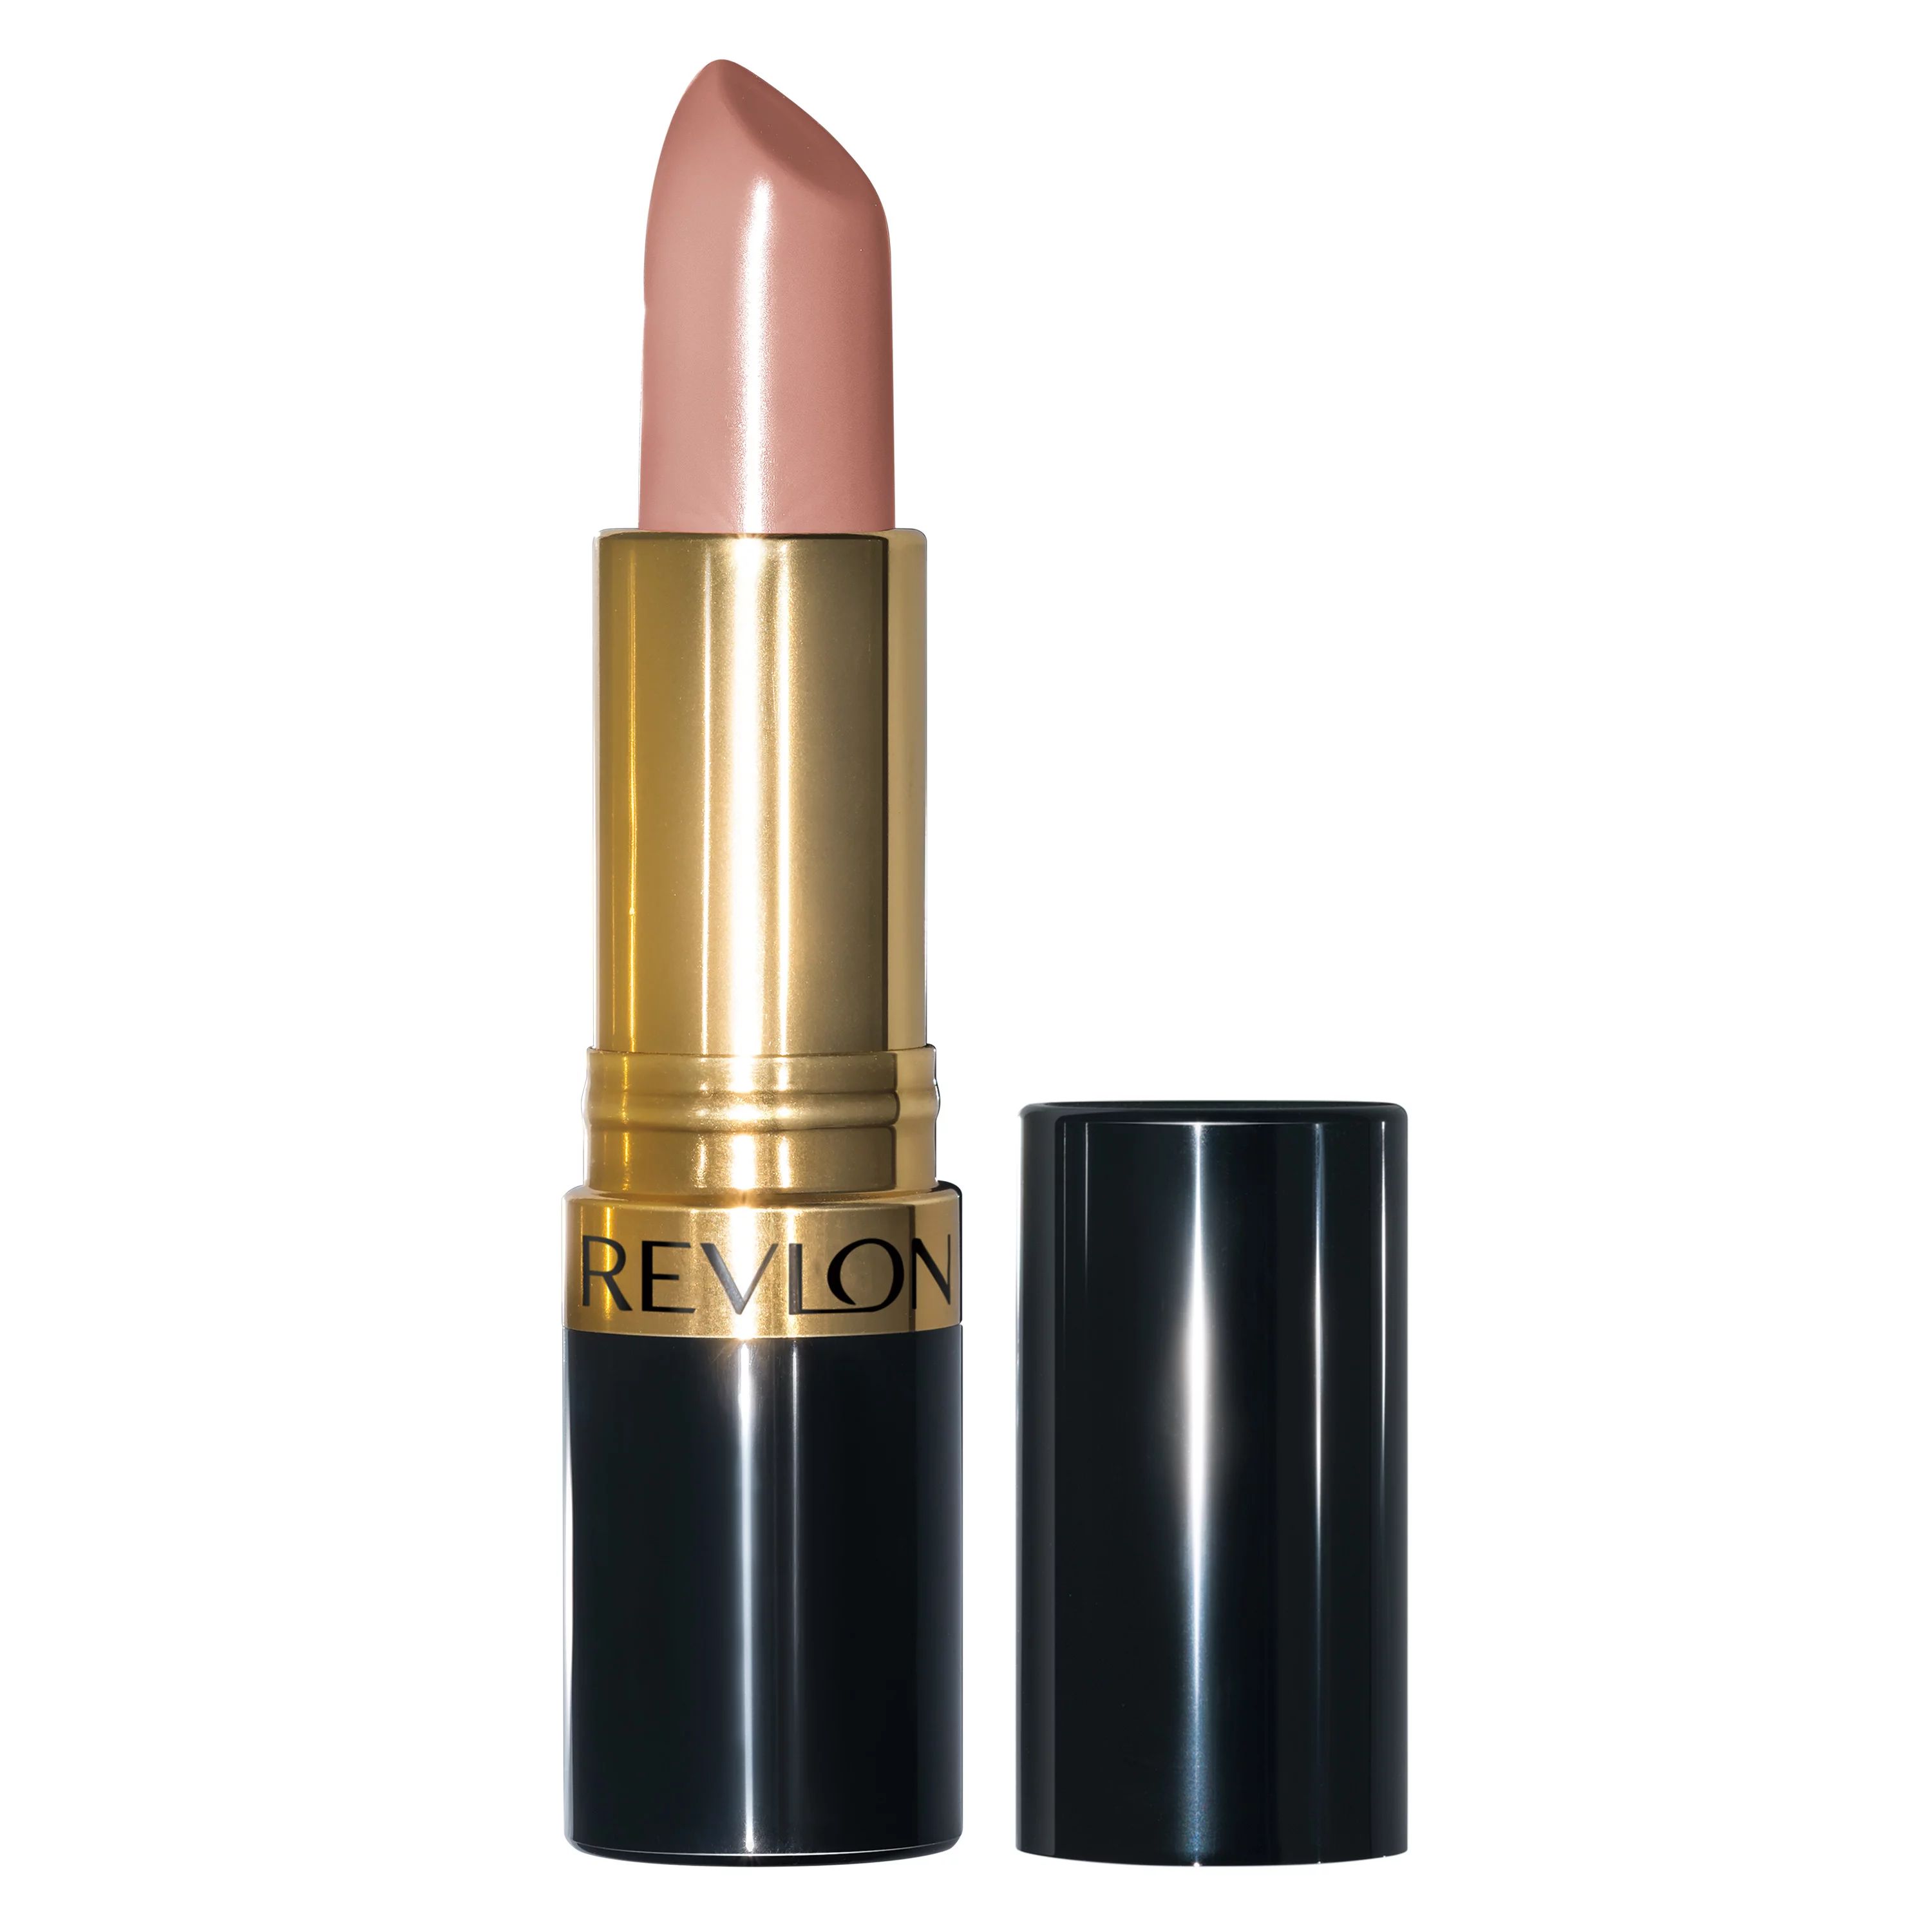 Revlon Super Lustrous Moisturizing Lipstick with Vitamin E, Cream Finish in Nude, 755 Bare It All... | Walmart (US)